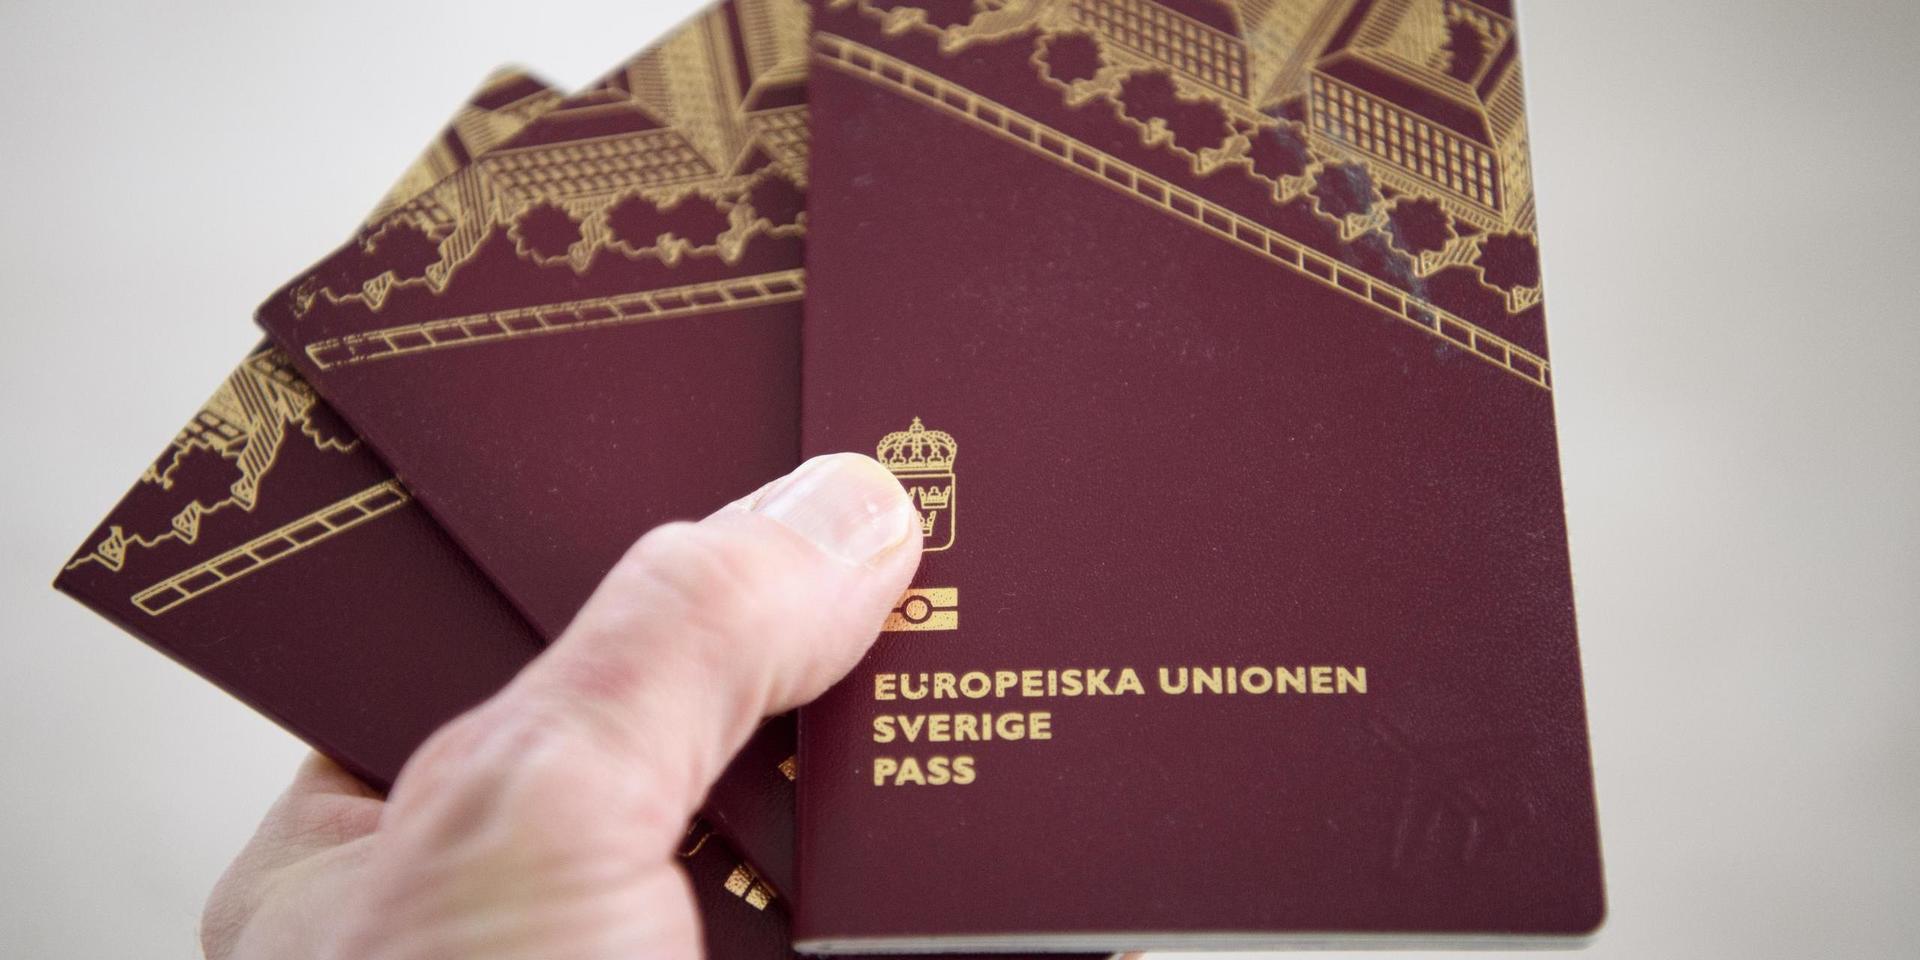 Högt tryck på tidsbokningen när en halv miljon svenskar samtidigt vill förnya sina utgångna pass. Arkivbild.